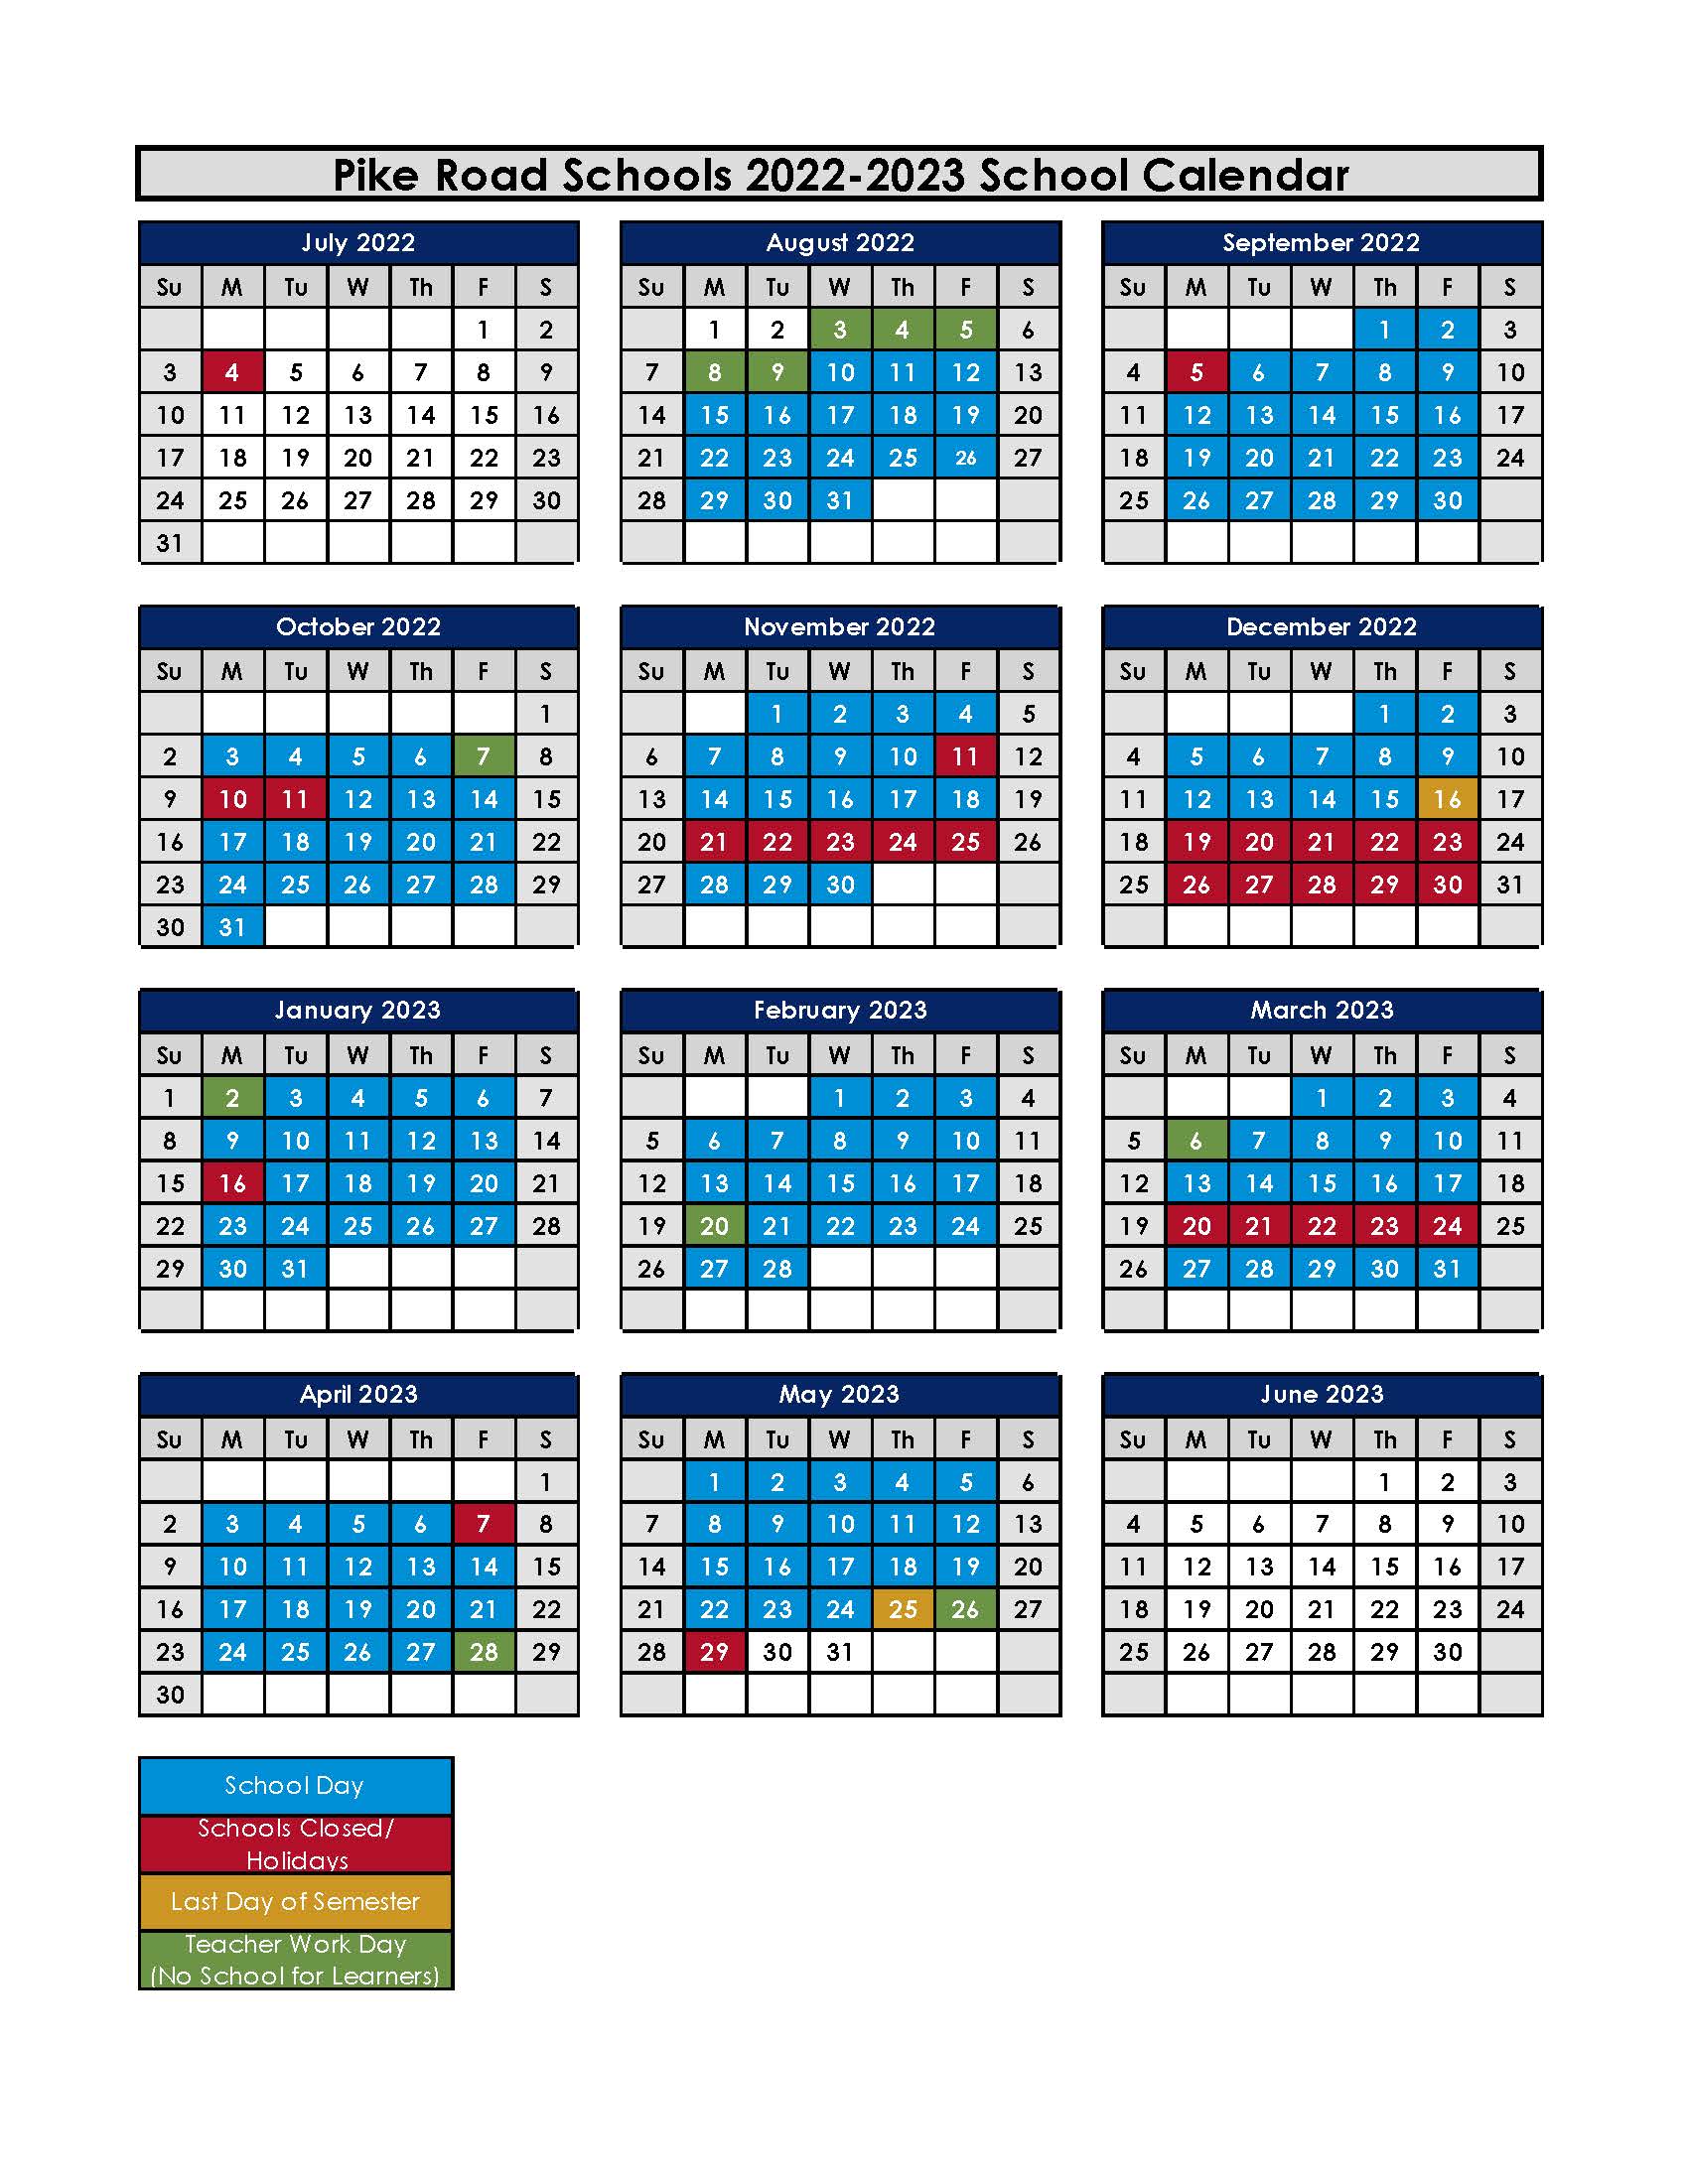 Pike Road Schools Calendar 2024 2025